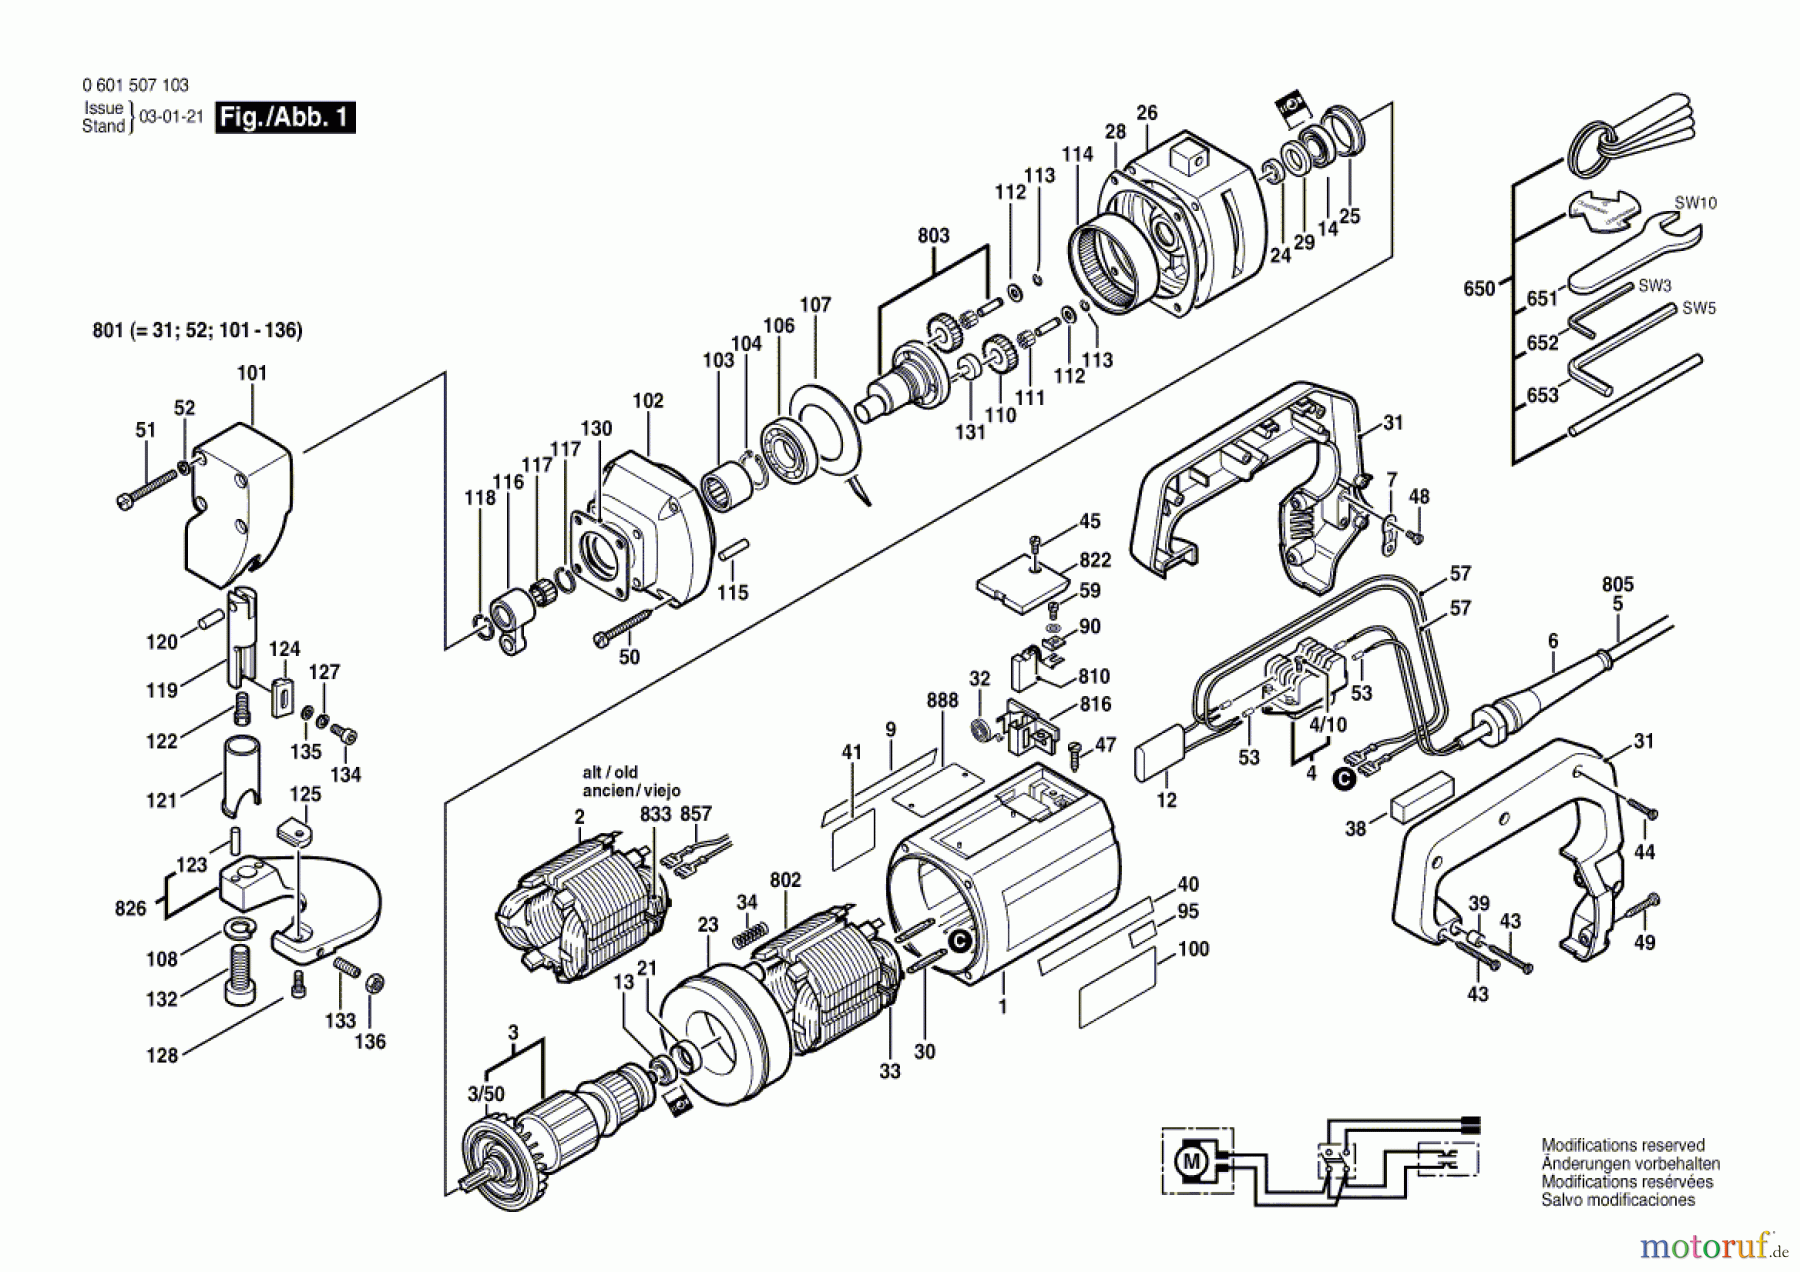  Bosch Werkzeug Blechschere GSC 3,5 Seite 1